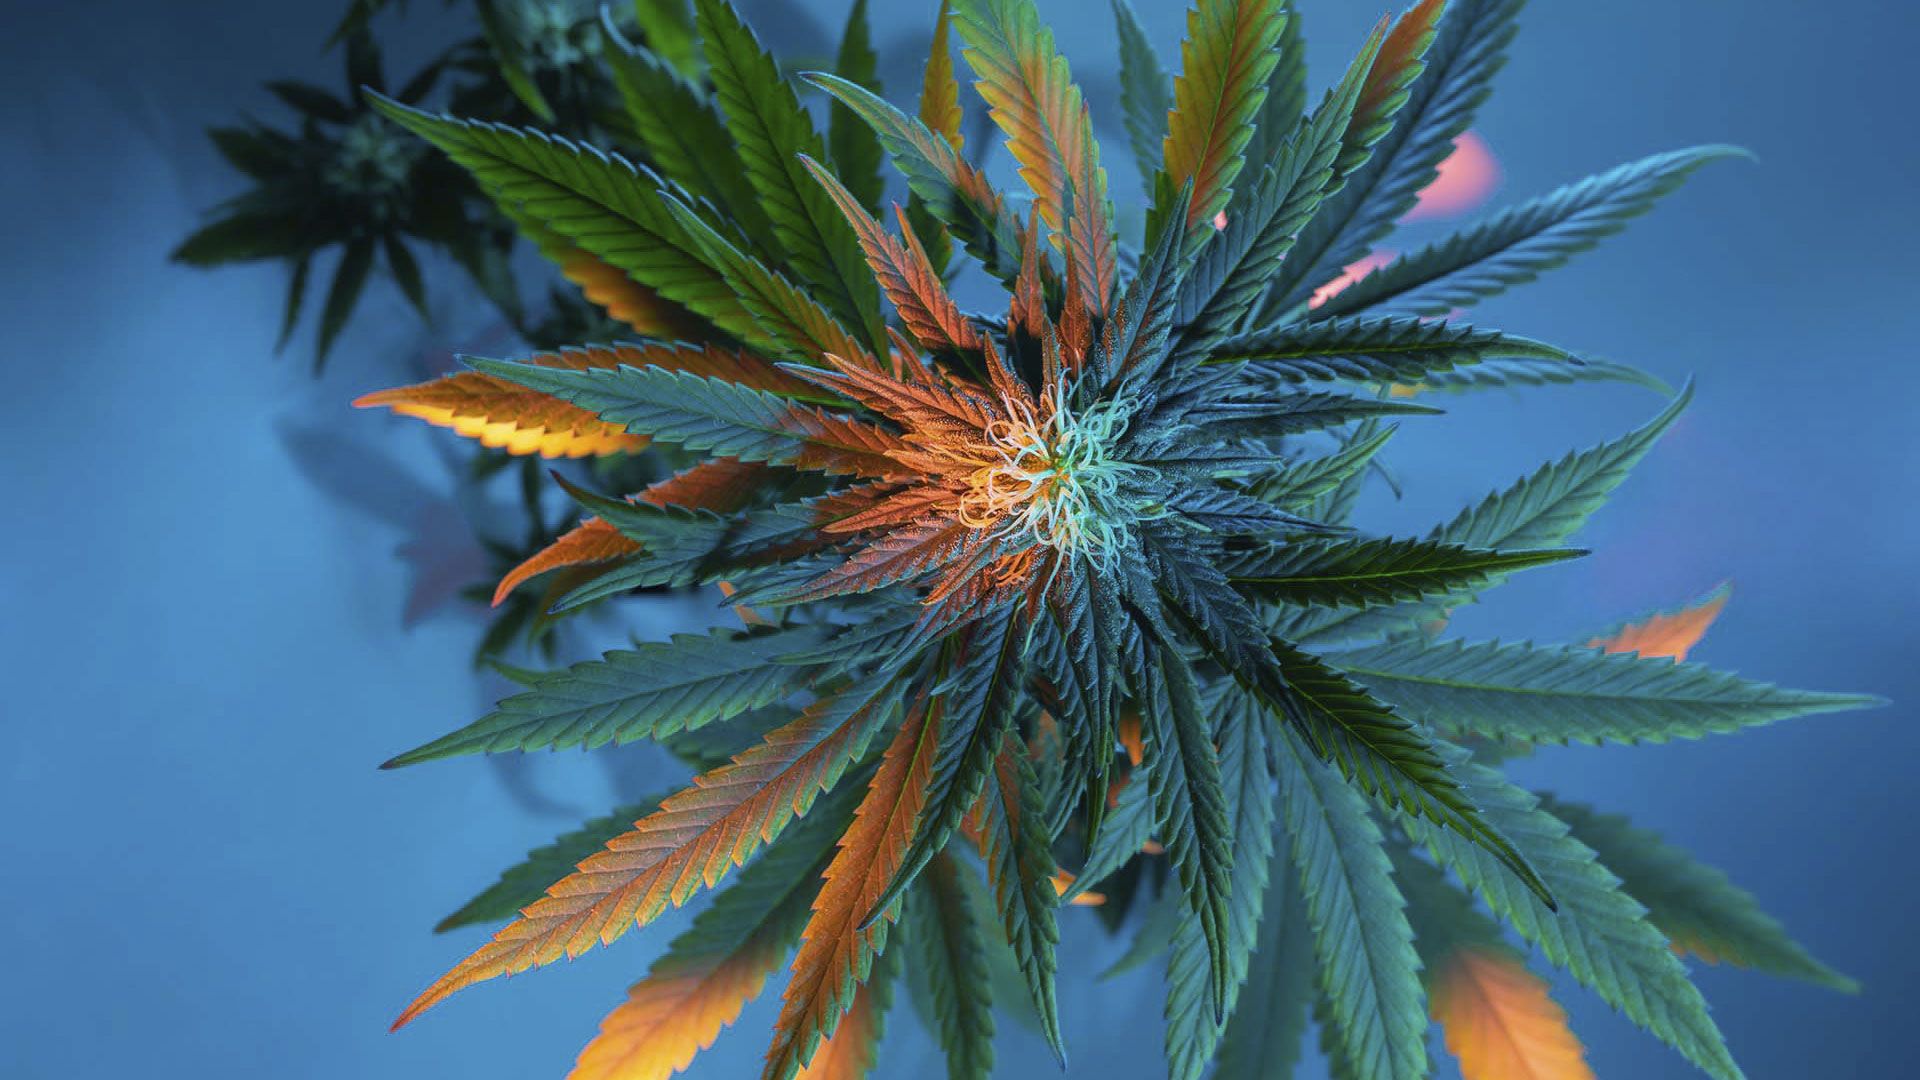 Promotional image for Можно ли употреблять марихуану в медицинских целях?